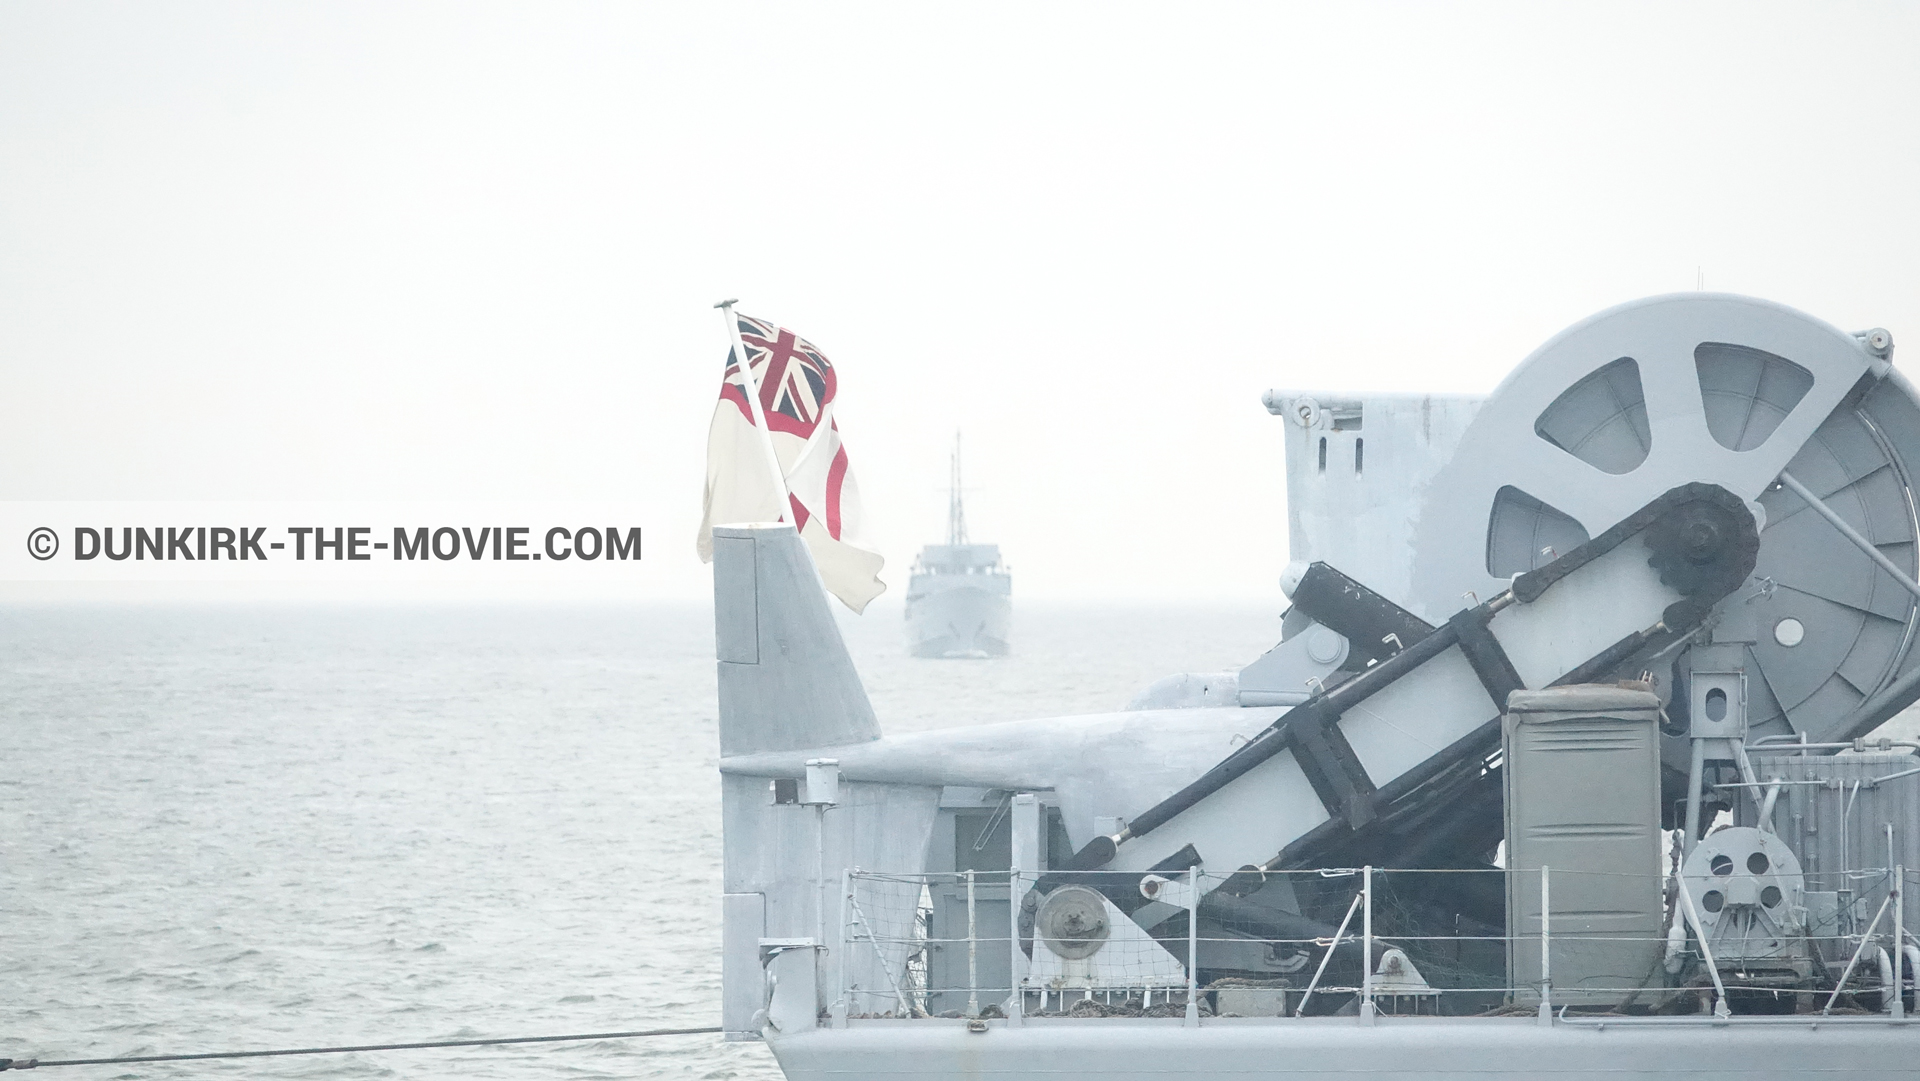 Fotos con mares calma, cielo gris, barco,  durante el rodaje de la película Dunkerque de Nolan